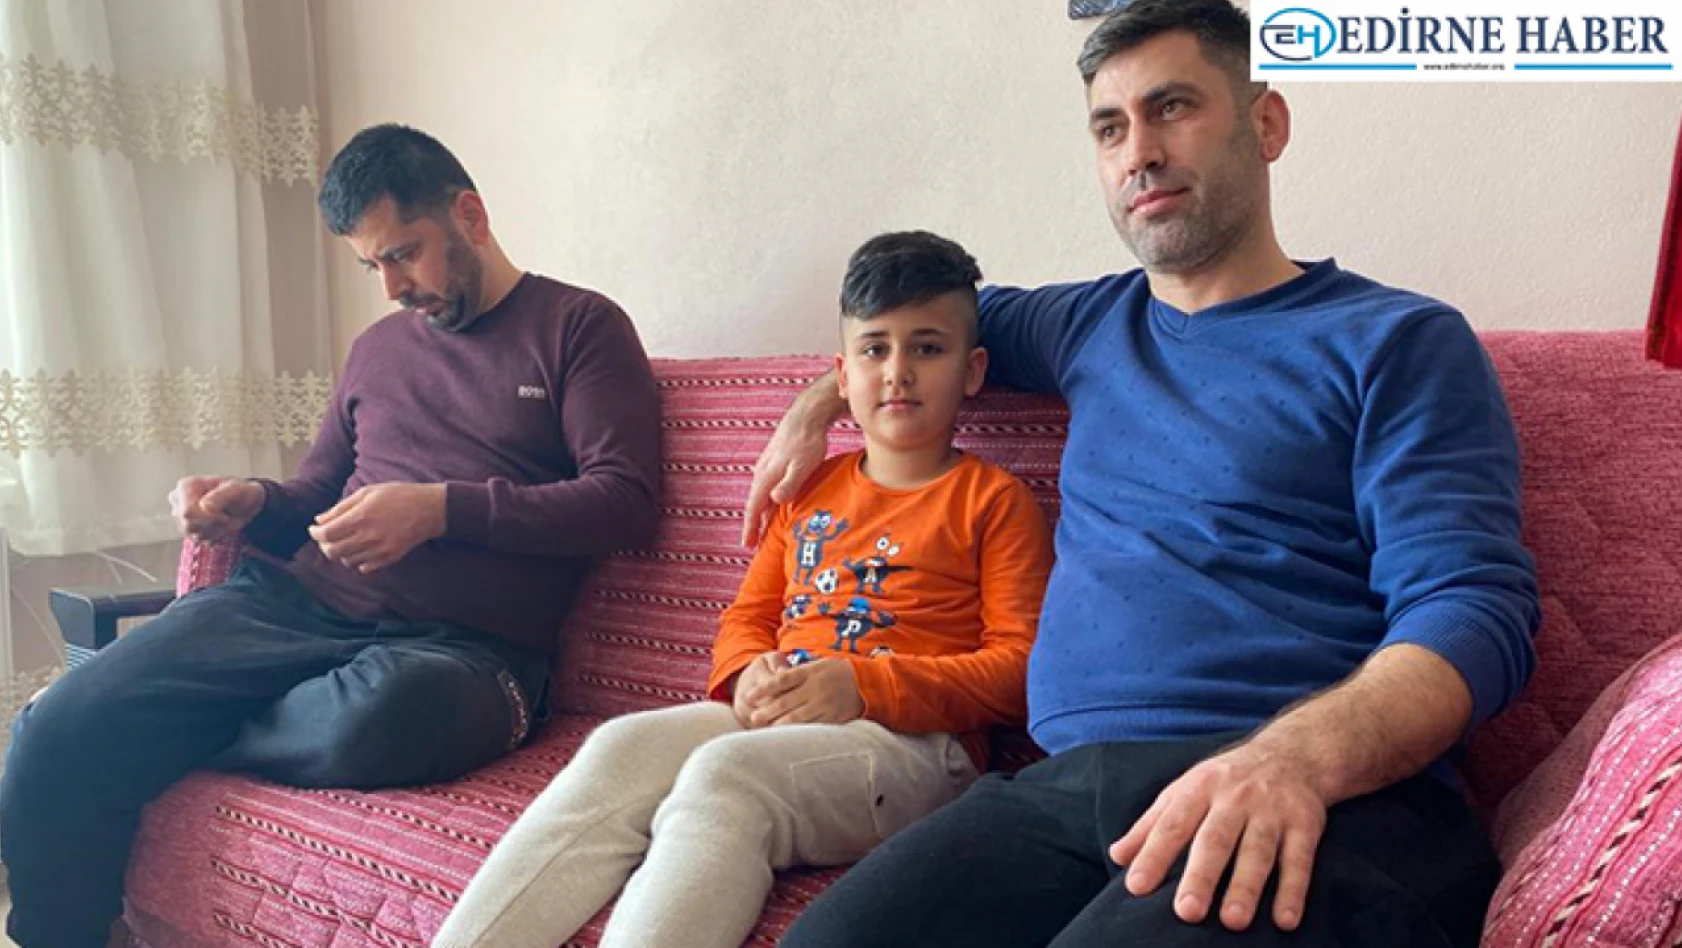 Edirne'ye gelen depremzede aileye destek olmak için evinin kapılarını açtı